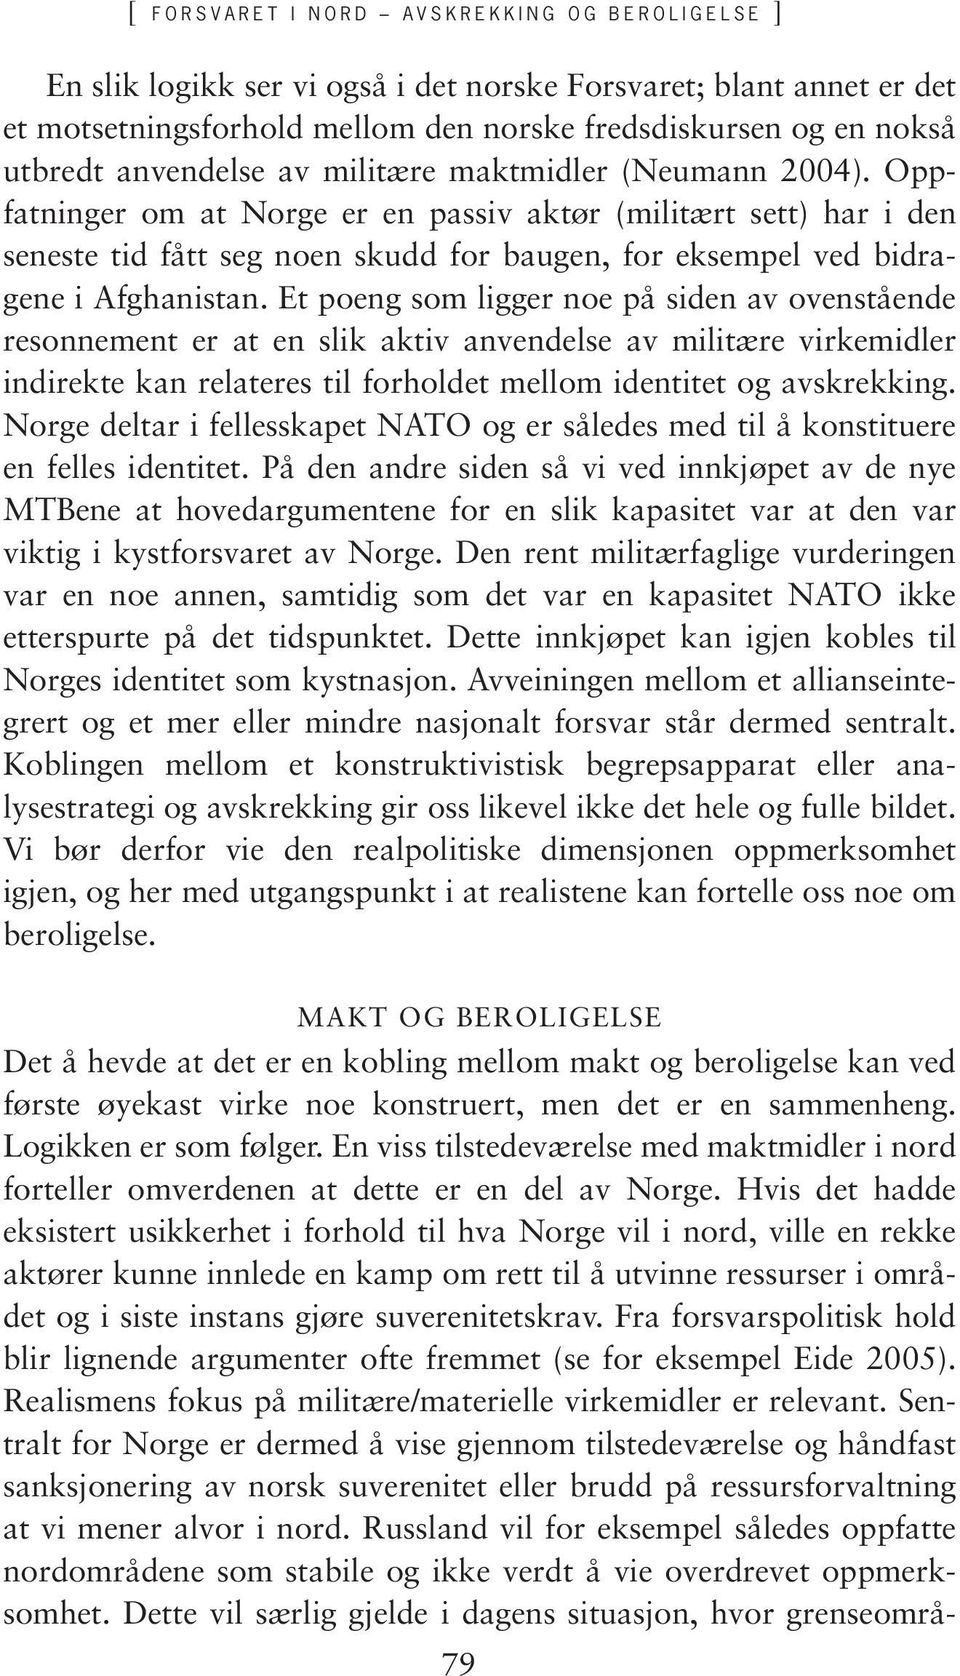 Oppfatninger om at Norge er en passiv aktør (militært sett) har i den seneste tid fått seg noen skudd for baugen, for eksempel ved bidragene i Afghanistan.